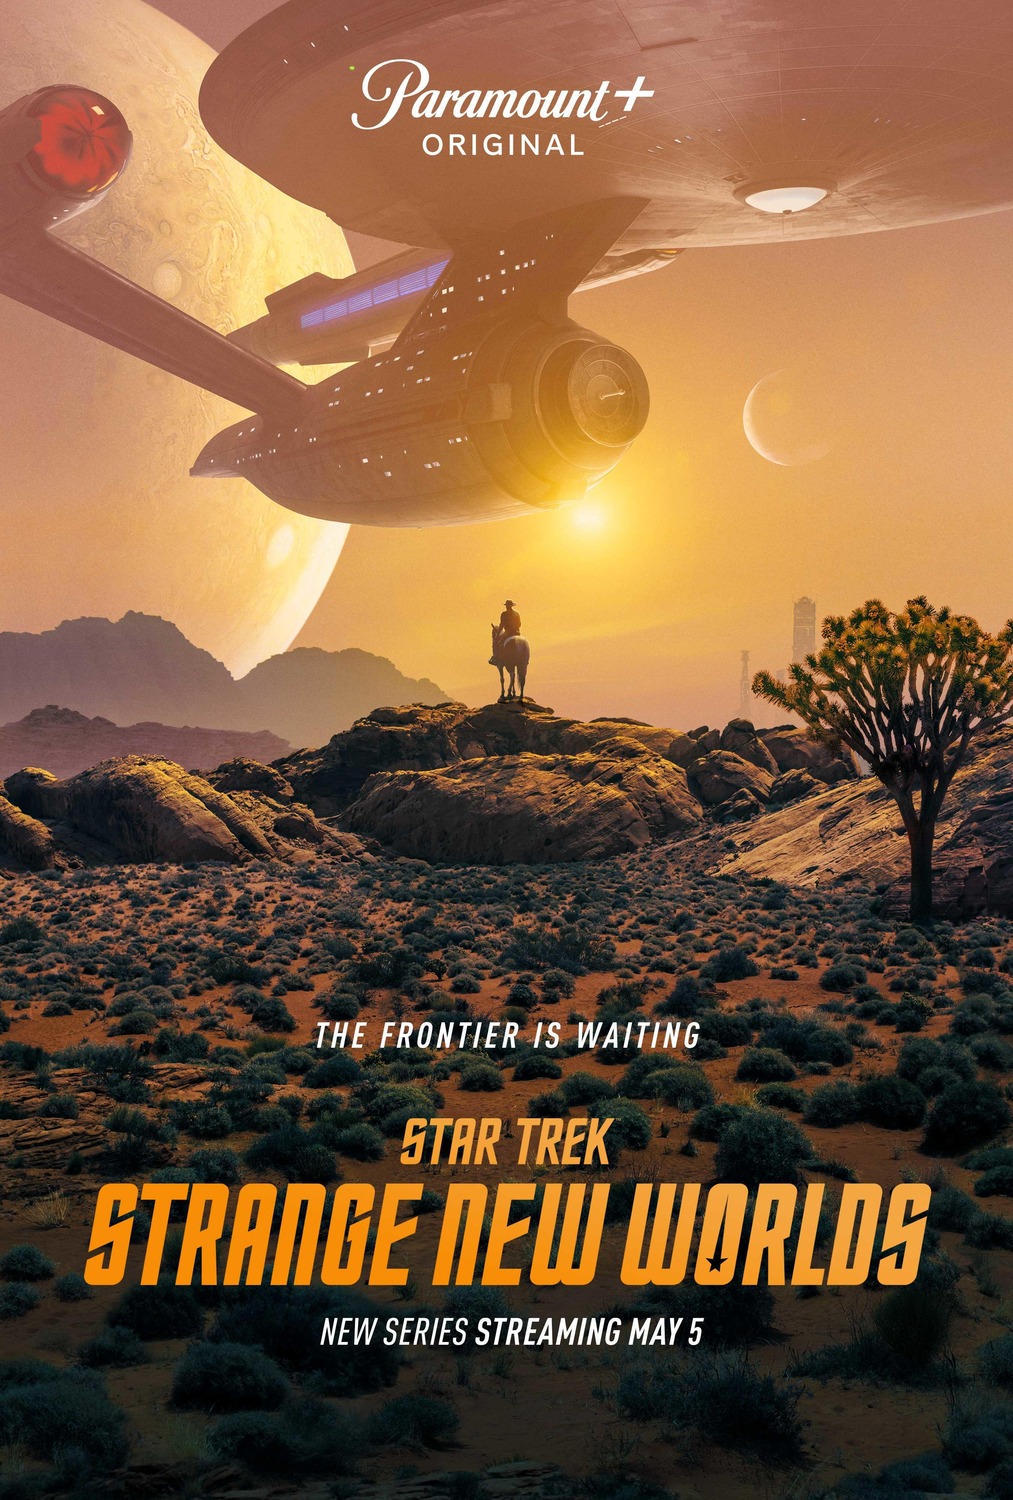 Extra Large TV Poster Image for Star Trek: Strange New Worlds (#1 of 22)